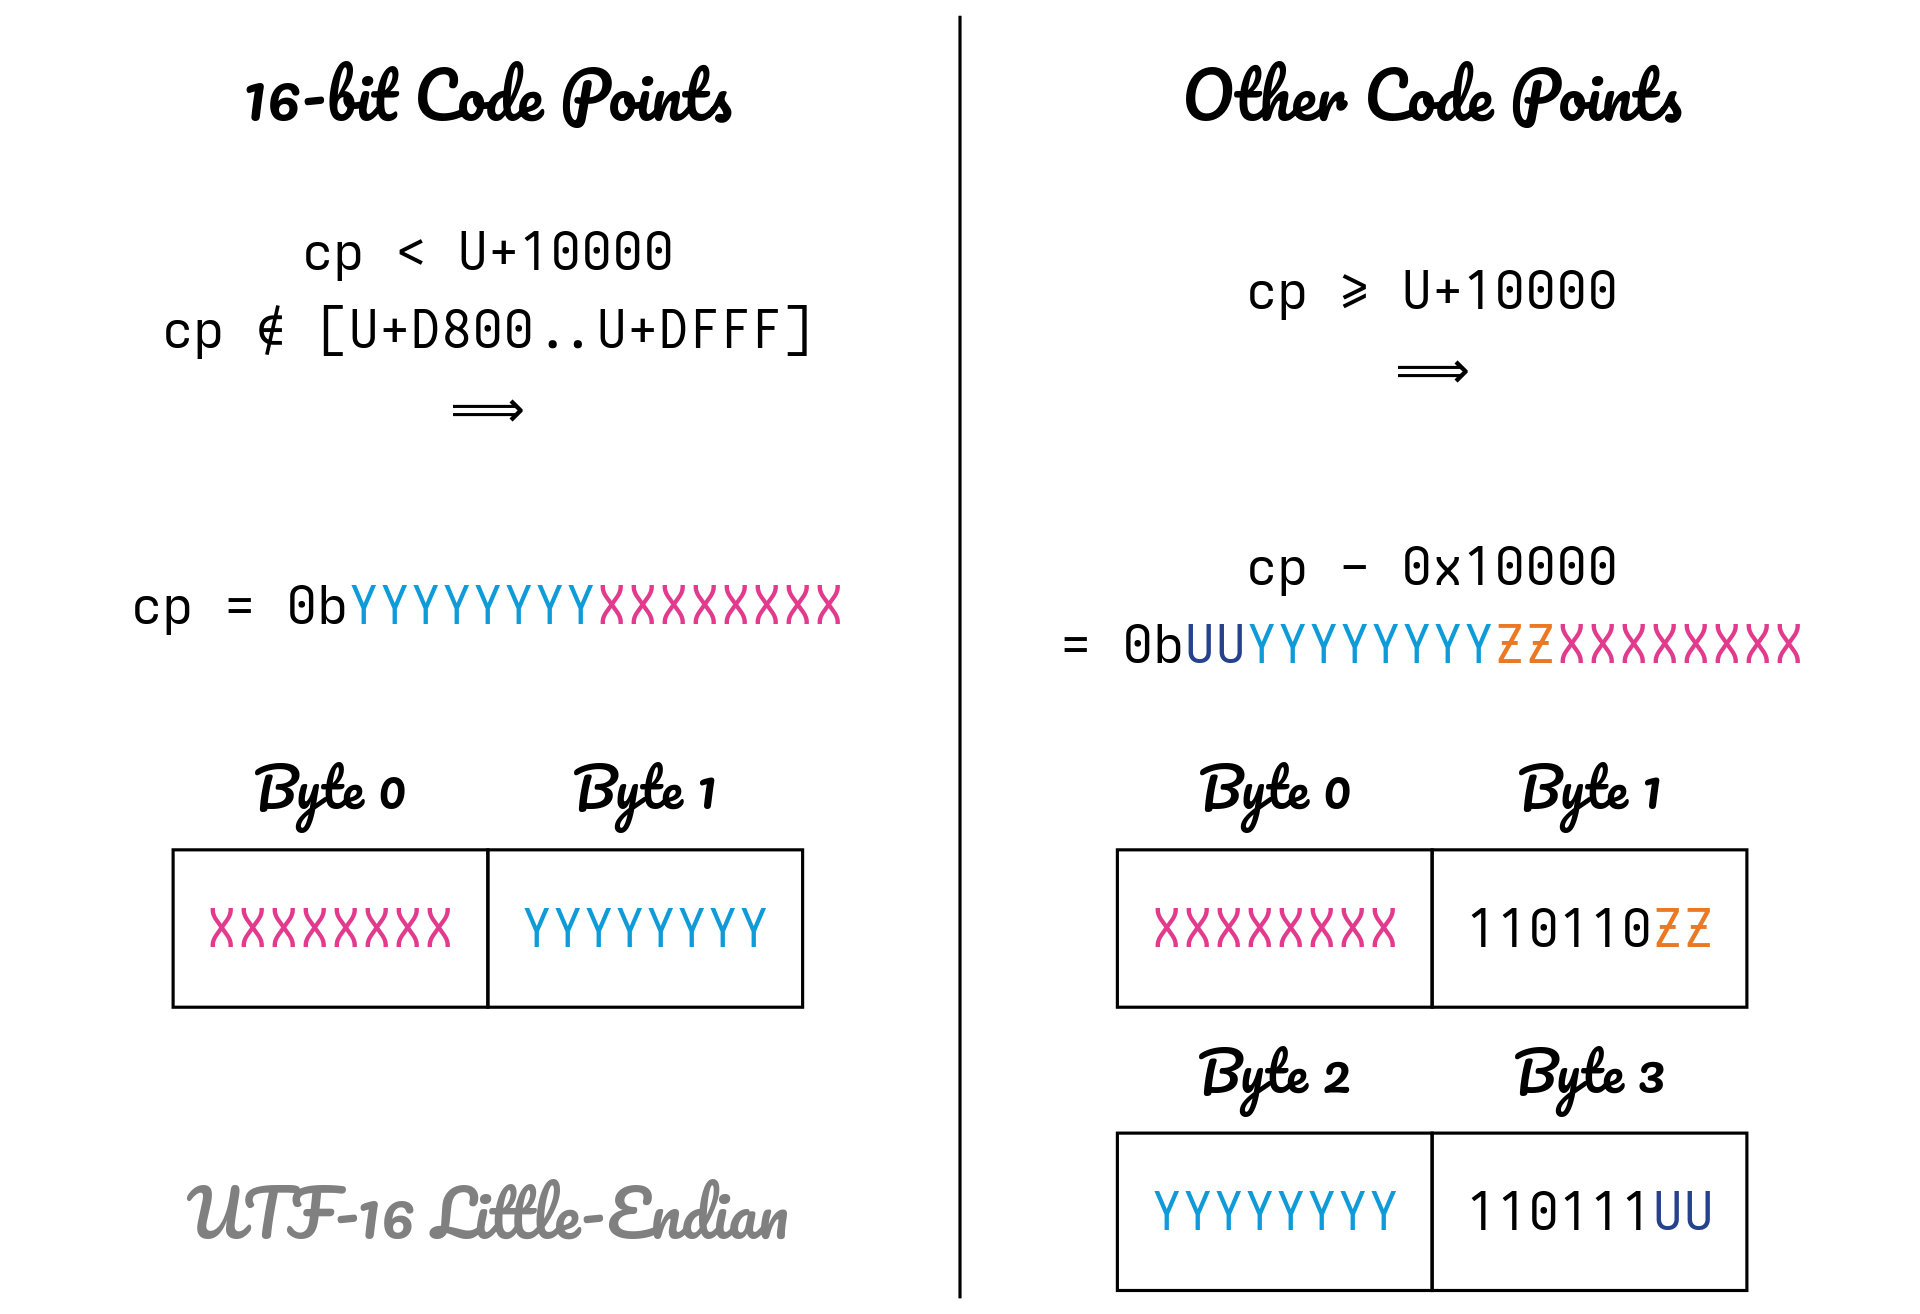 Visualisation of the UTF-16 encoding form